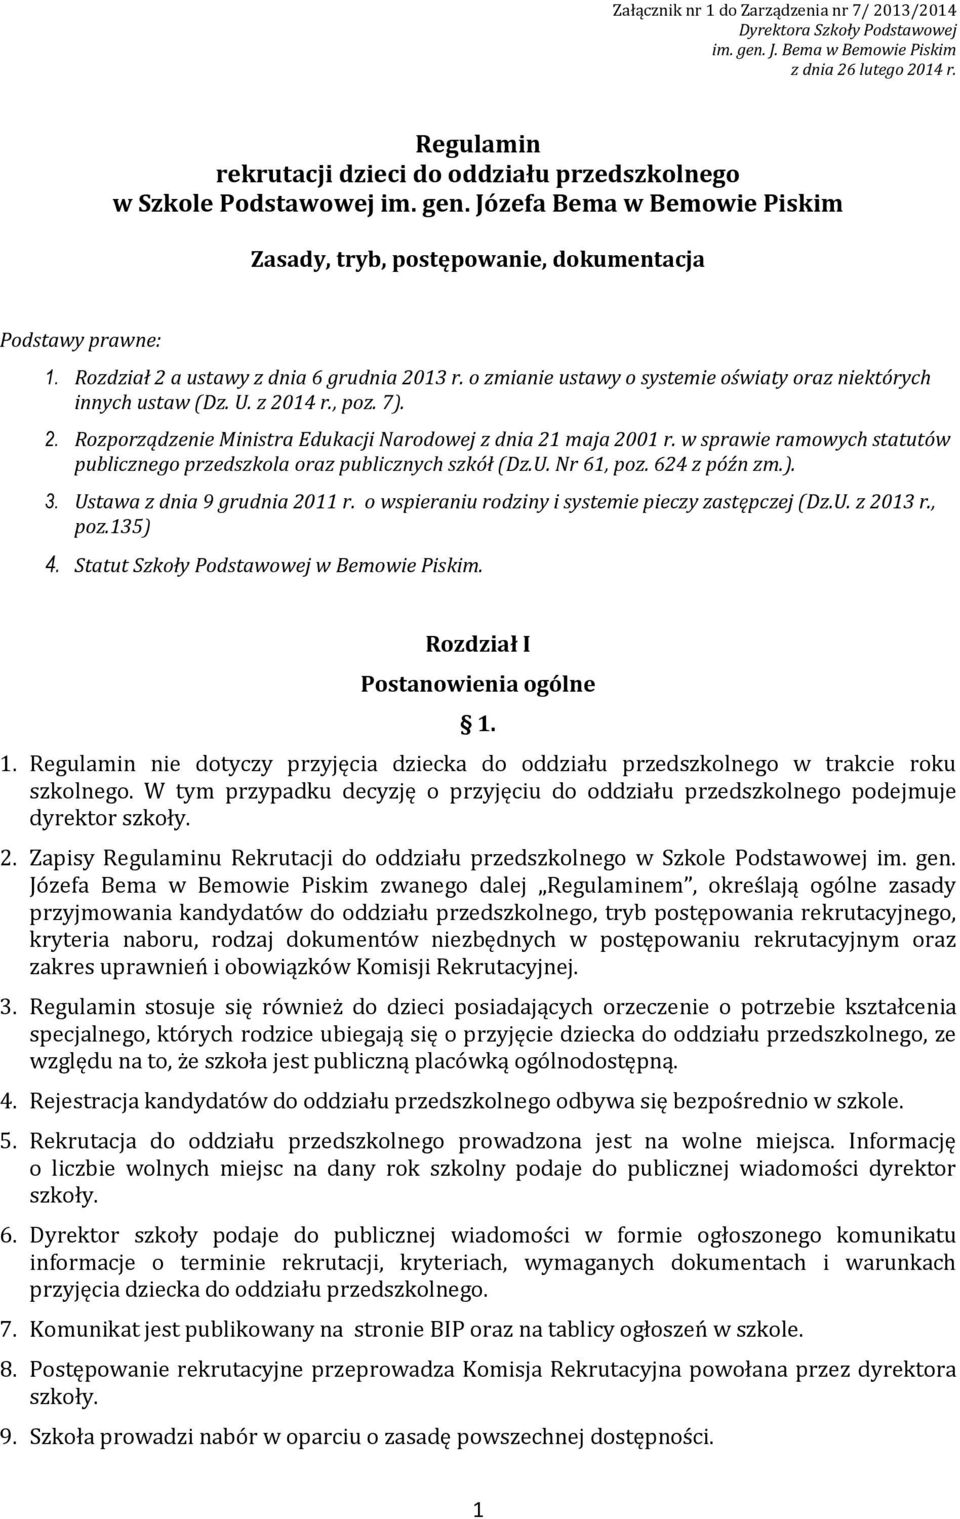 Rozdział 2 a ustawy z dnia 6 grudnia 2013 r. o zmianie ustawy o systemie oświaty oraz niektórych innych ustaw (Dz. U. z 2014 r., poz. 7). 2. Rozporządzenie Ministra Edukacji Narodowej z dnia 21 maja 2001 r.